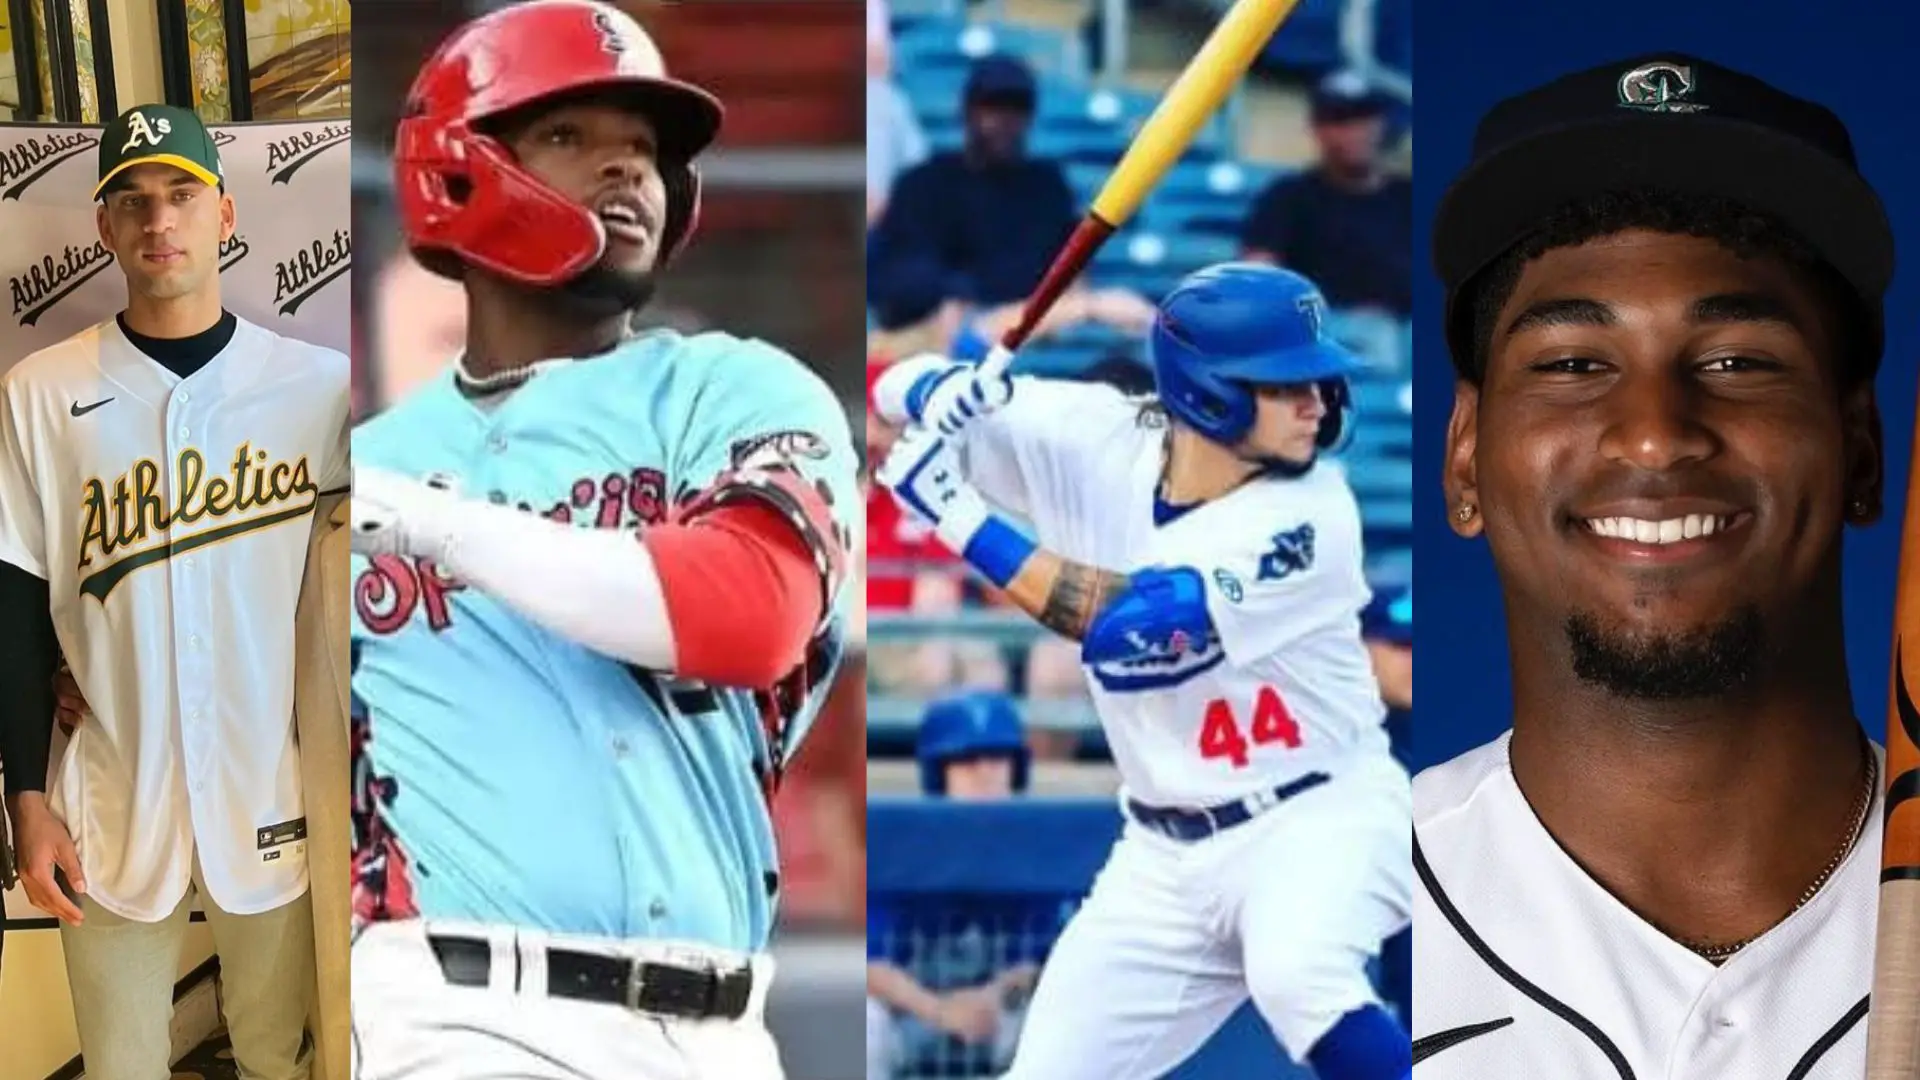 La camada de prospectos cubanos en el sistema de Ligas Menores de las diferentes franquicias que conforman la MLB es de un nivel elevado.